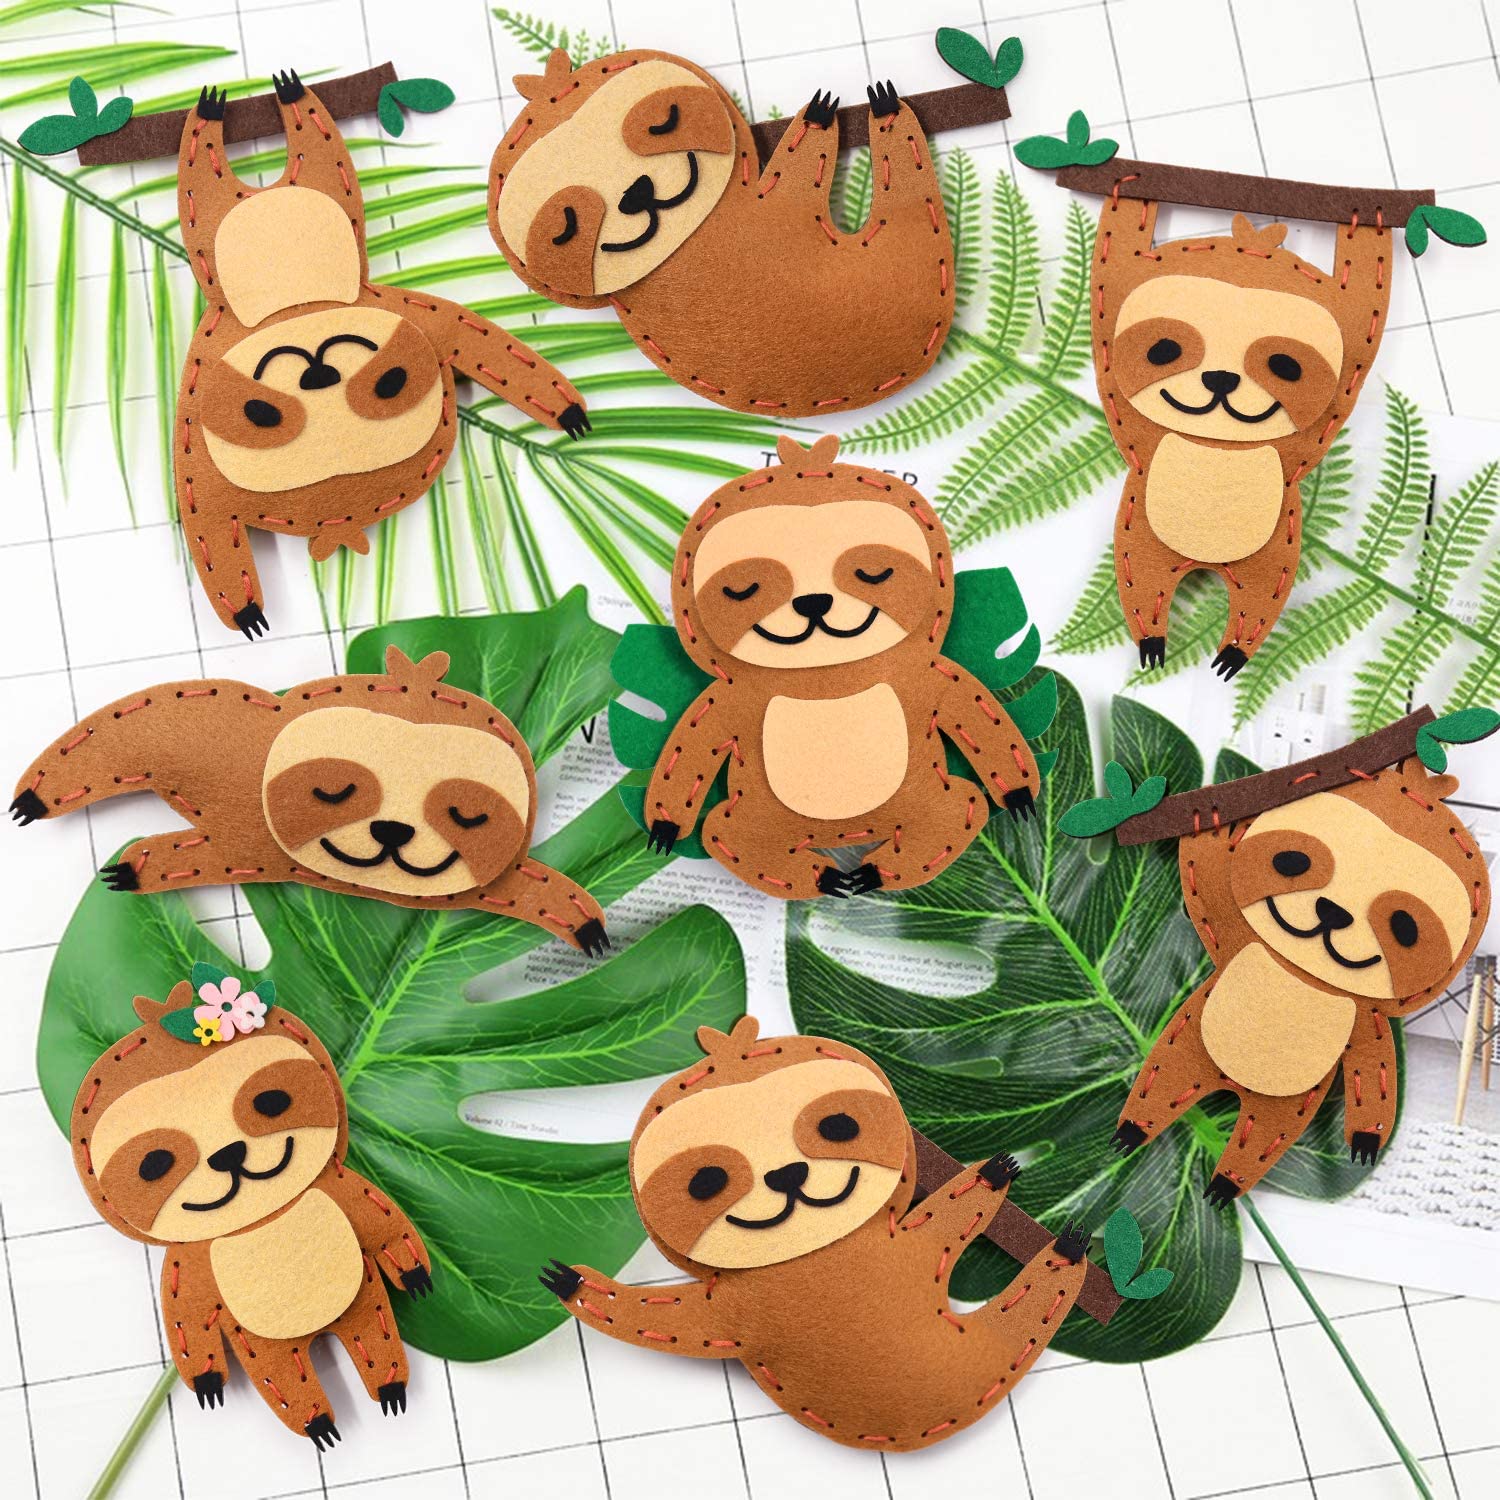 hand sewn sloth stuffed animal